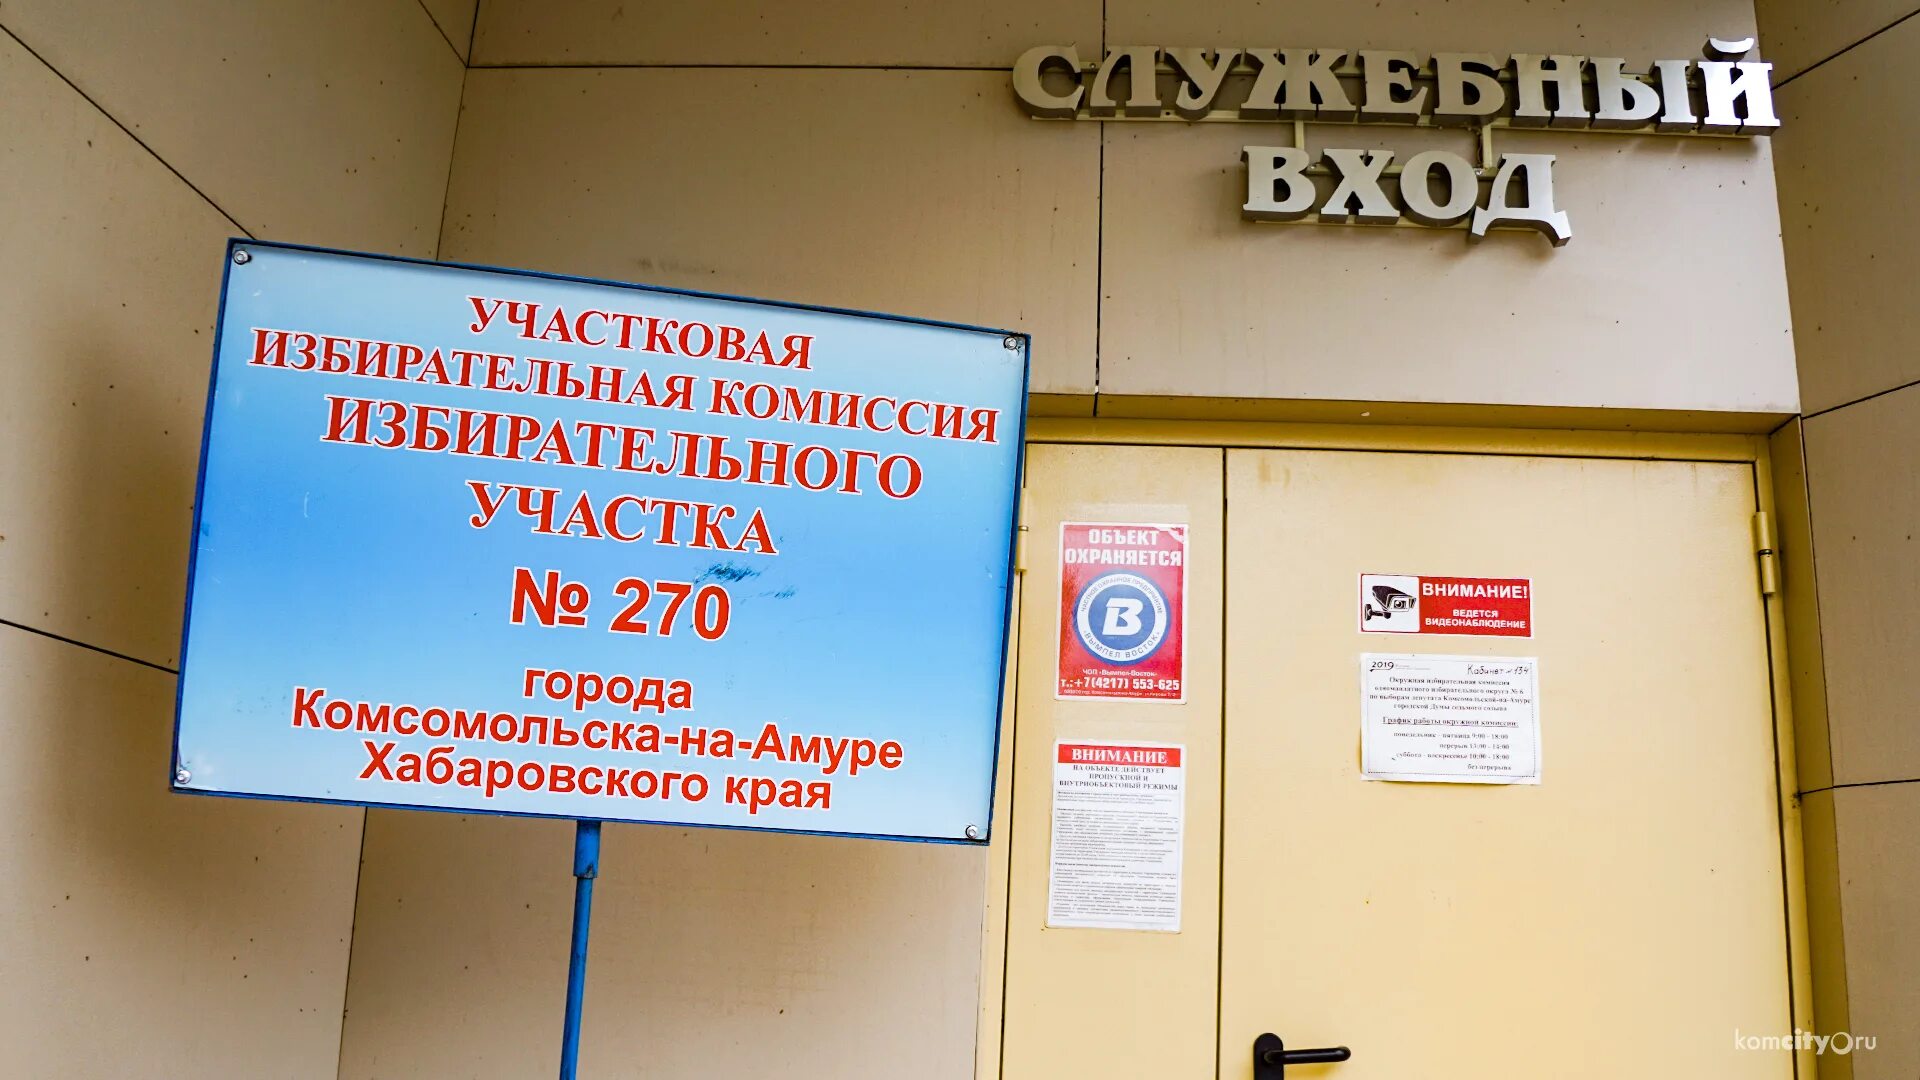 Во сколько открывается избирательный участок в москве. Избирательные участки Комсомольска-на Амуре.